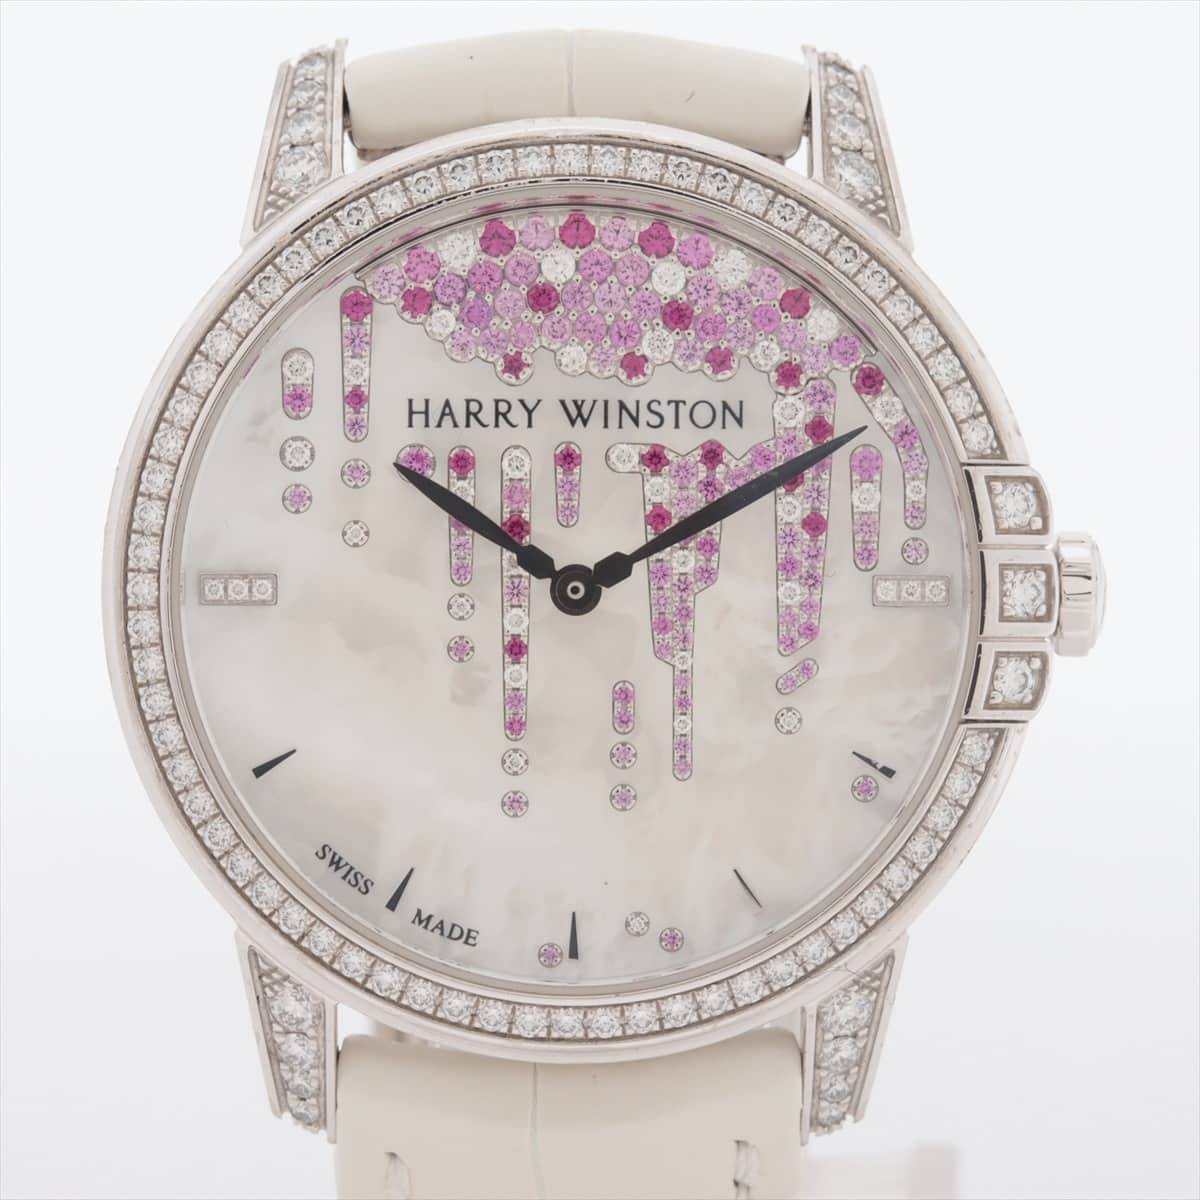 Harry Winston Midnight Diamond Staractites MIDAHM36WW001 750 & leather AT Shell-Face